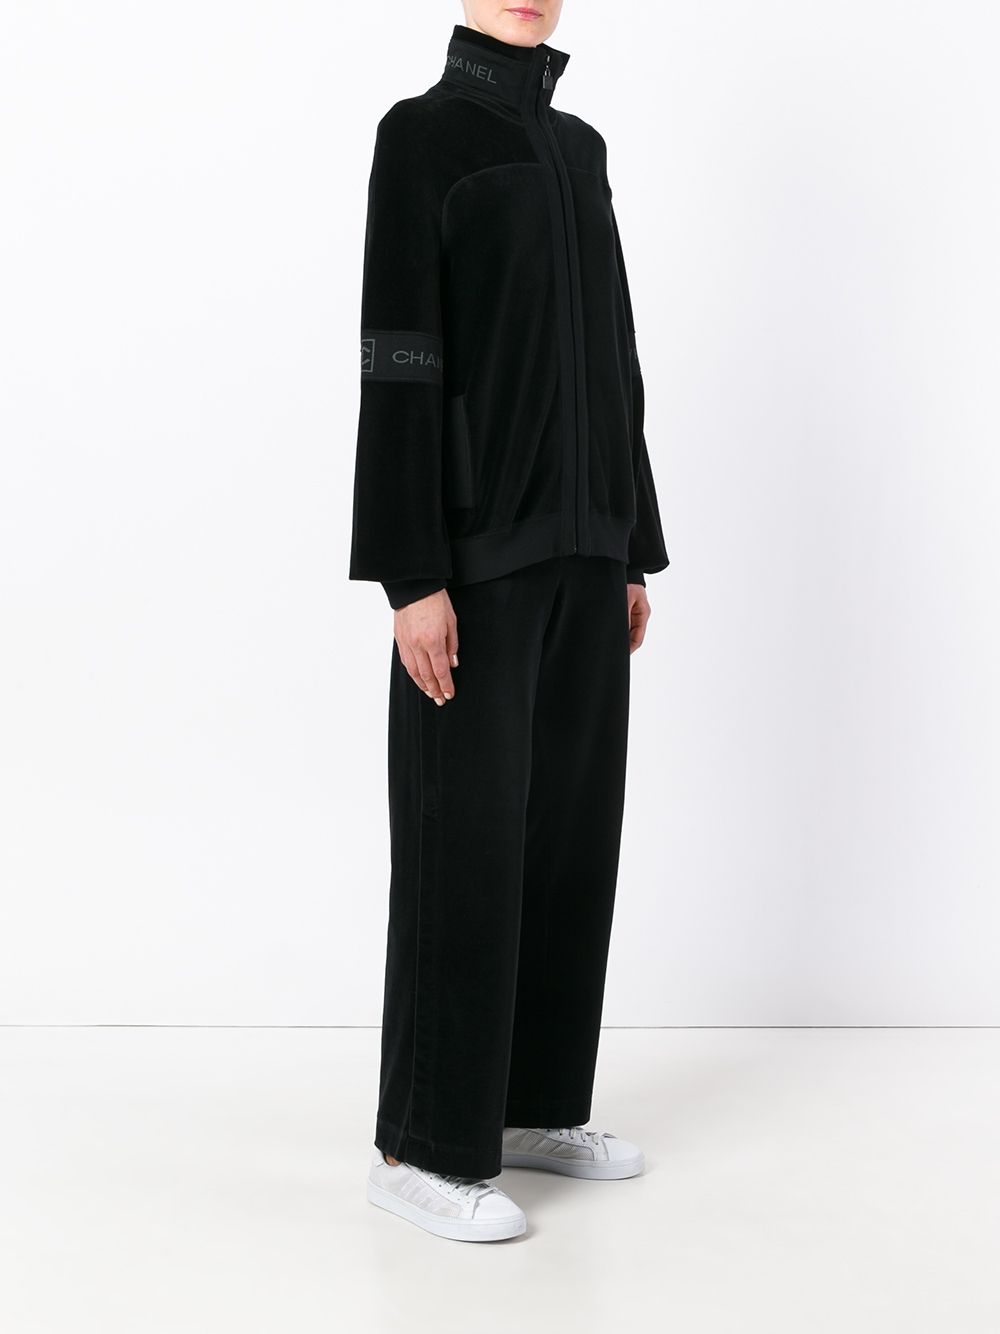 Louis Vuitton Men's Black Cotton Velour Multi Pocket Half Zip